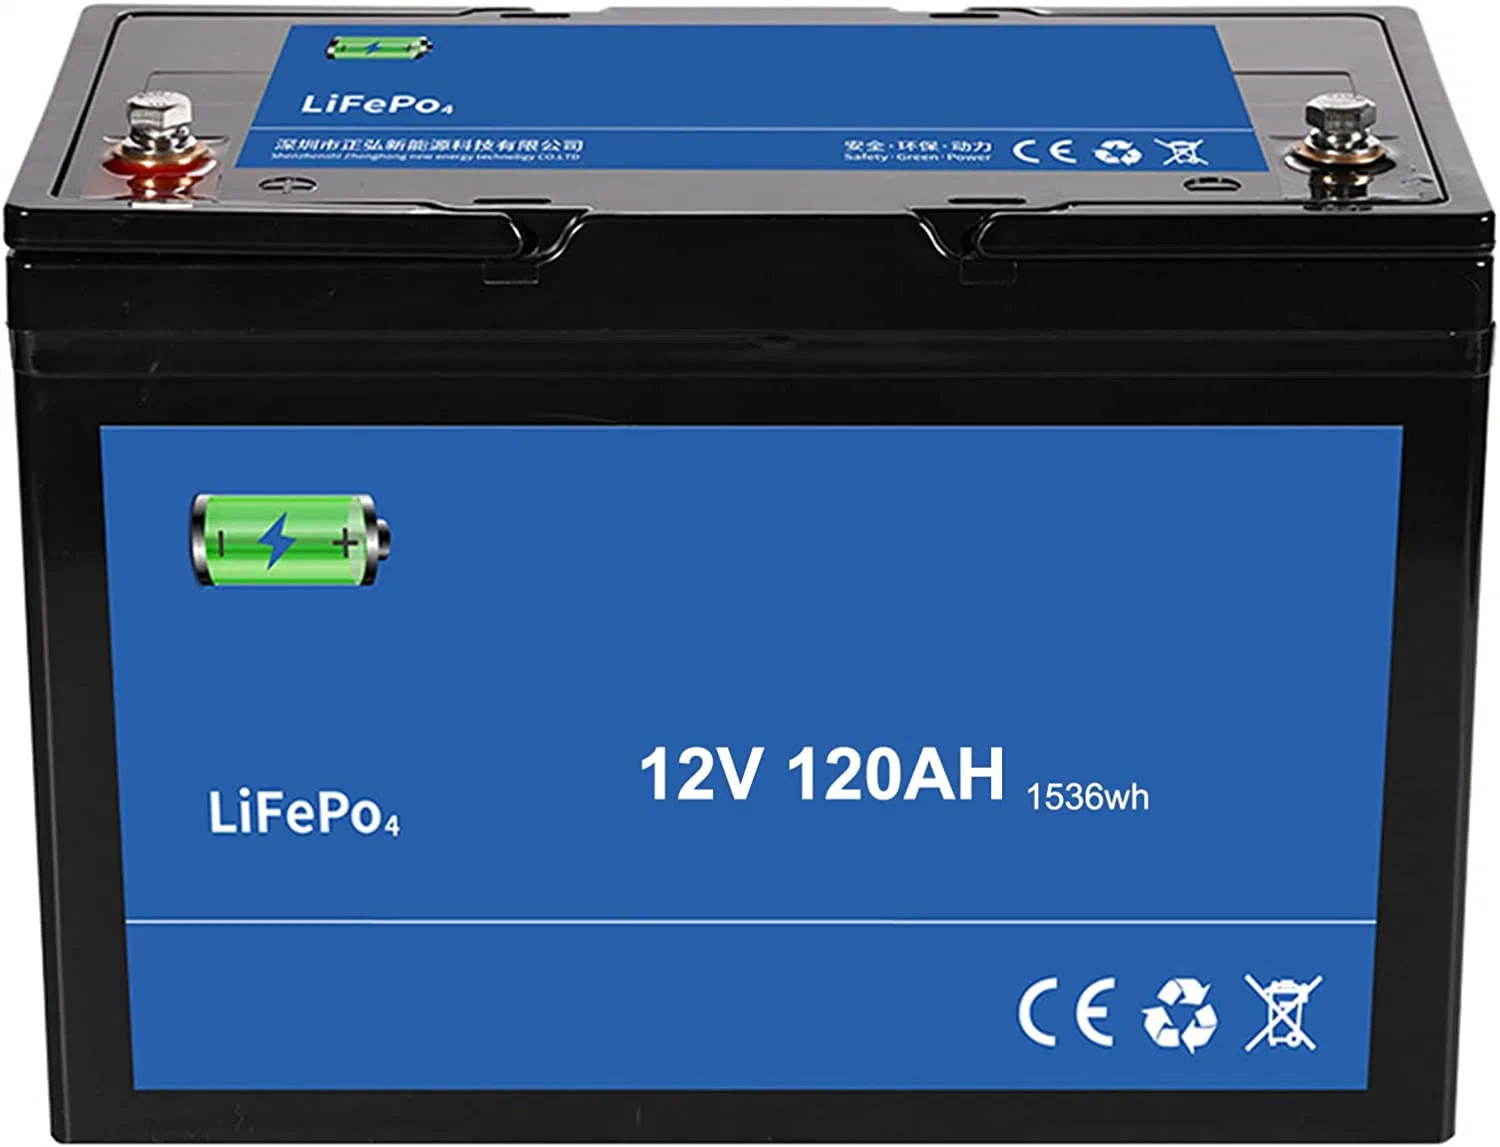 Bateria de iões de lítio LiFePO4 de 3,2V com fosfato de ferro de lítio para veículos elétricos (EV) Leve a baterias de carros de golfe elétricos RV de lítio